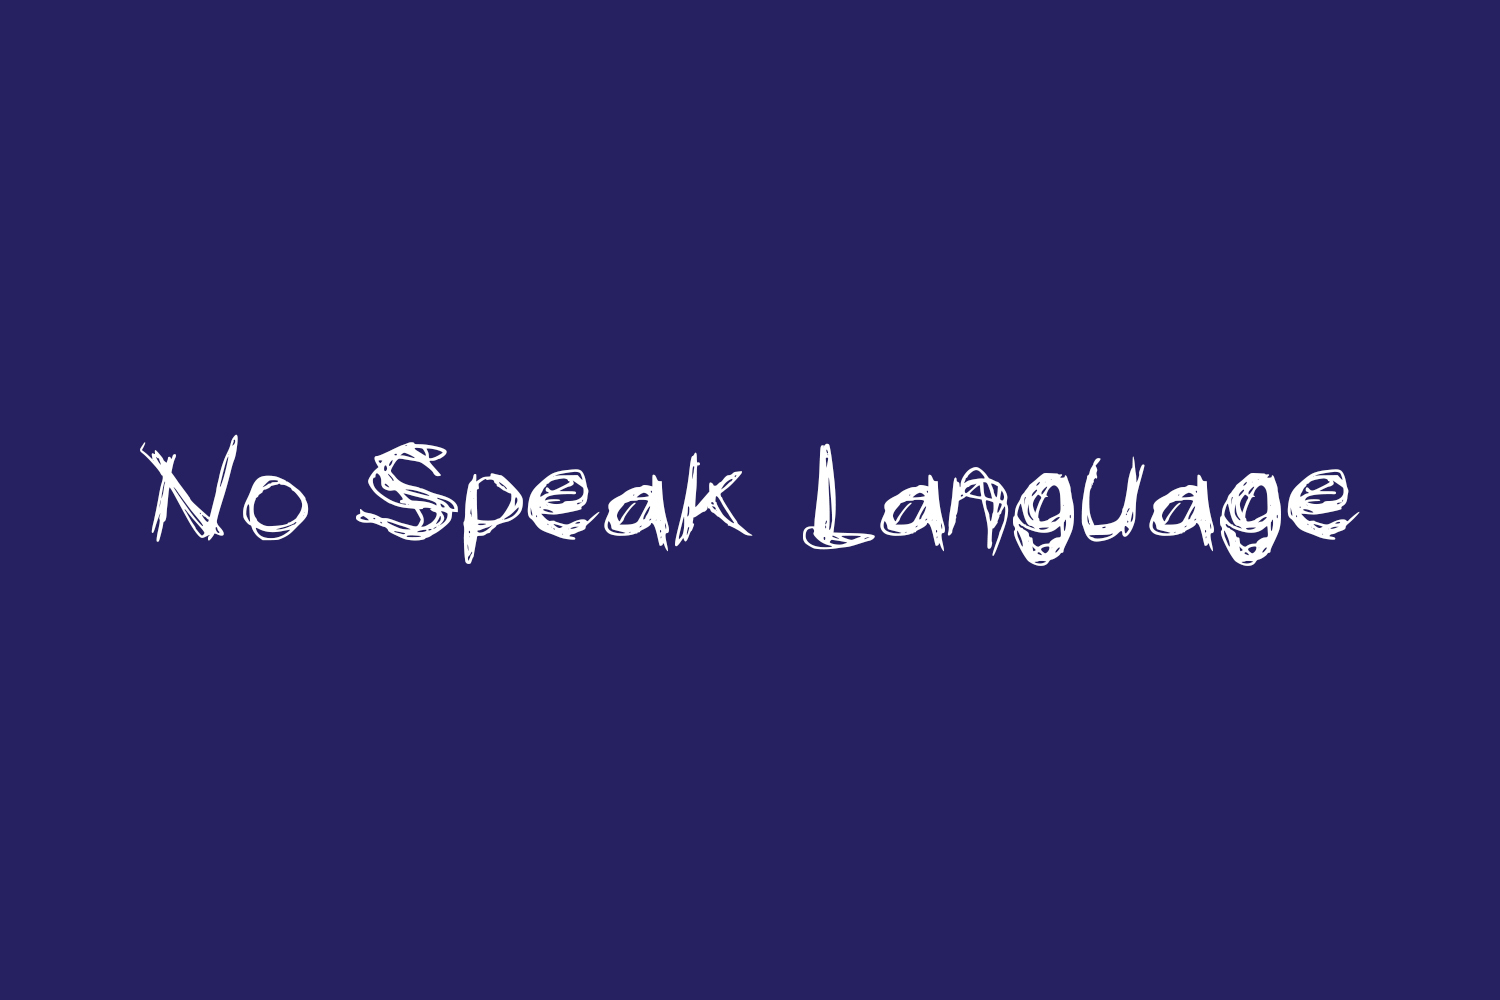 No Speak Language Free Font